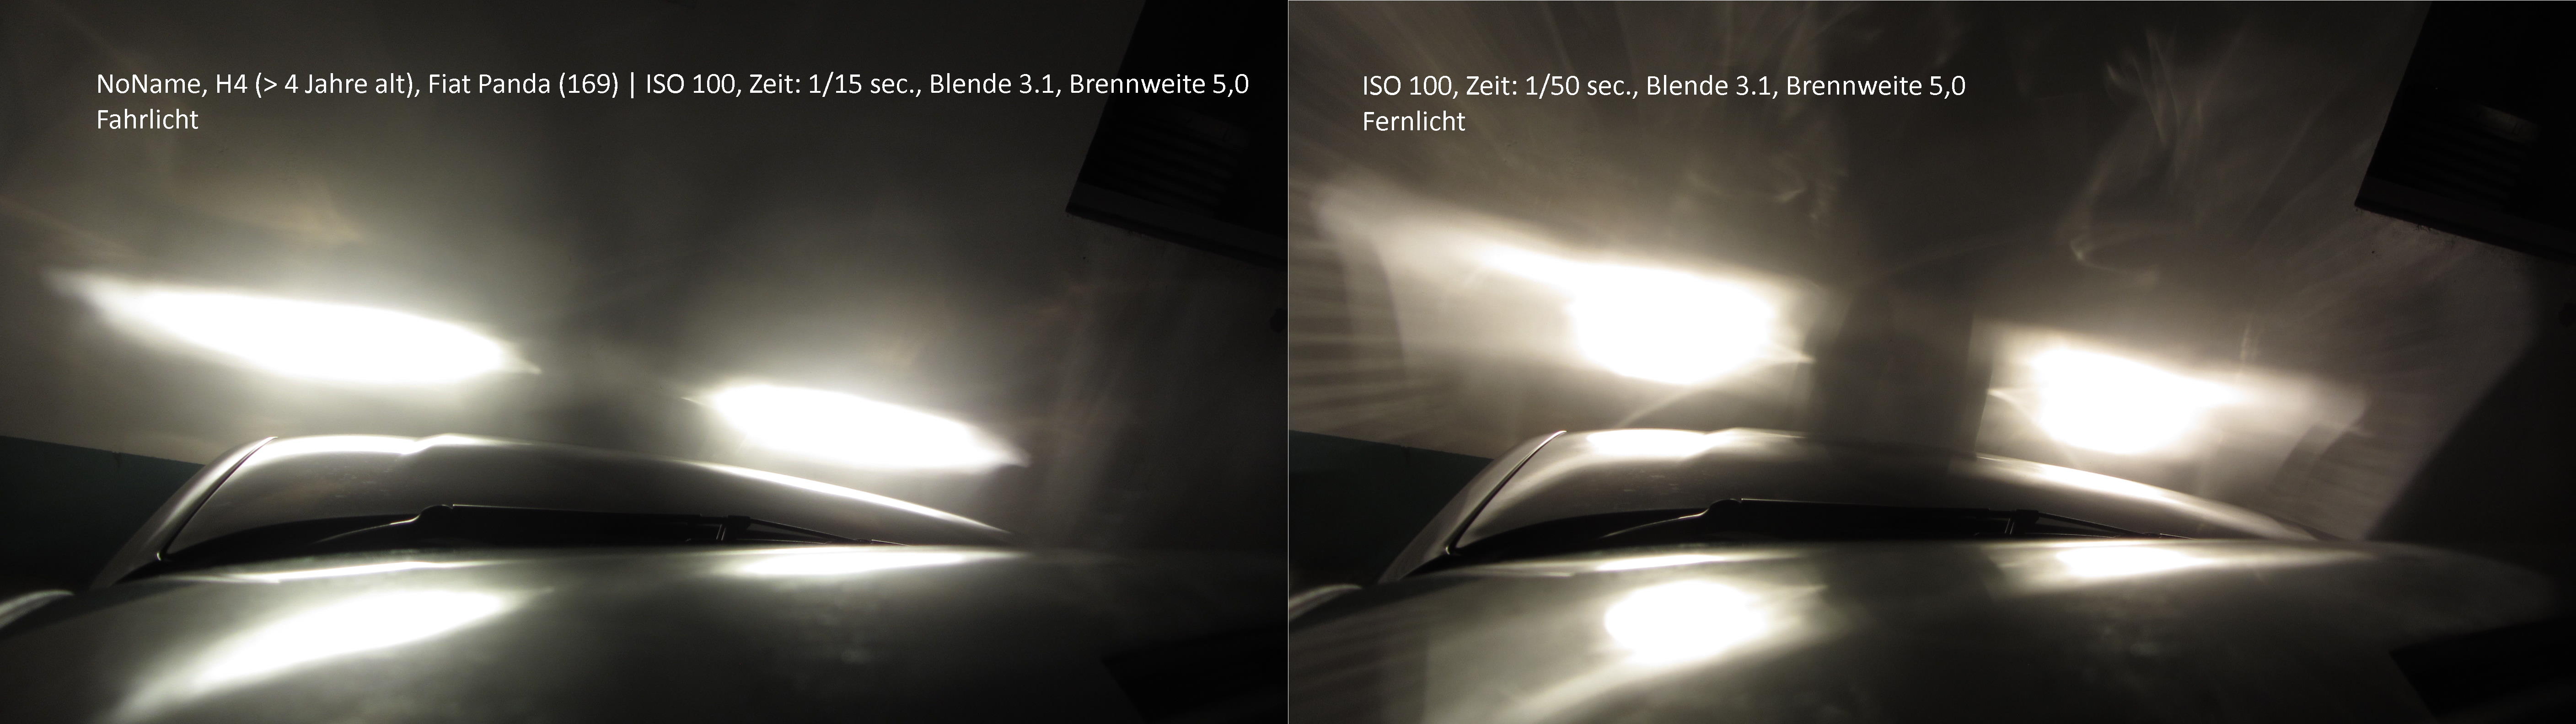 B6 Fernlicht Abblendlicht - Startseite Forum Auto Au